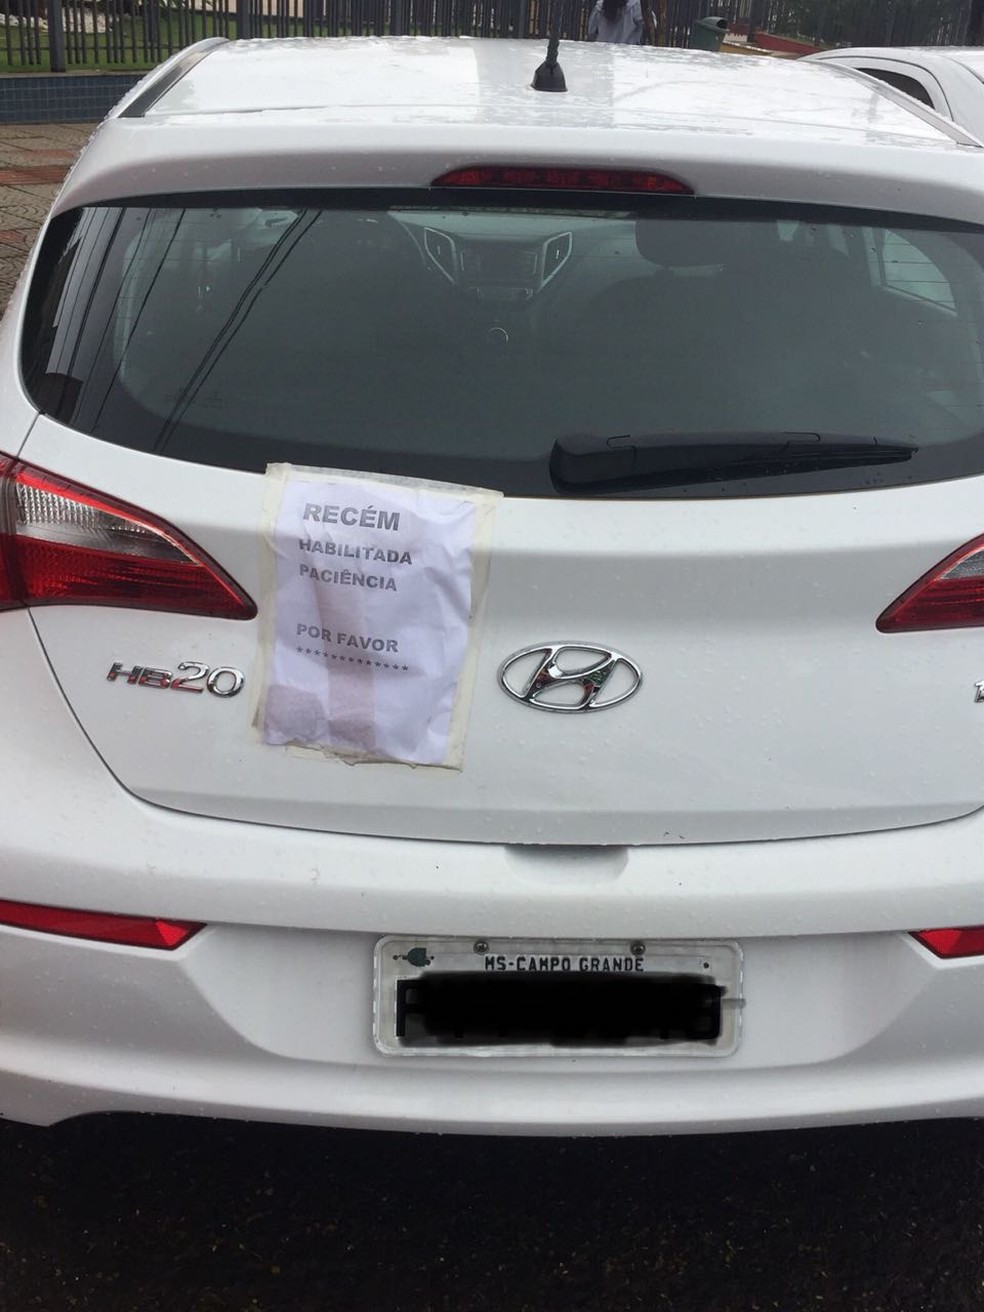 Irmãs tiveram a ideia de colocar bilhete em carro após xingamentos de outros motoristas em MS — Foto: Graziela Rezende/G1 MS